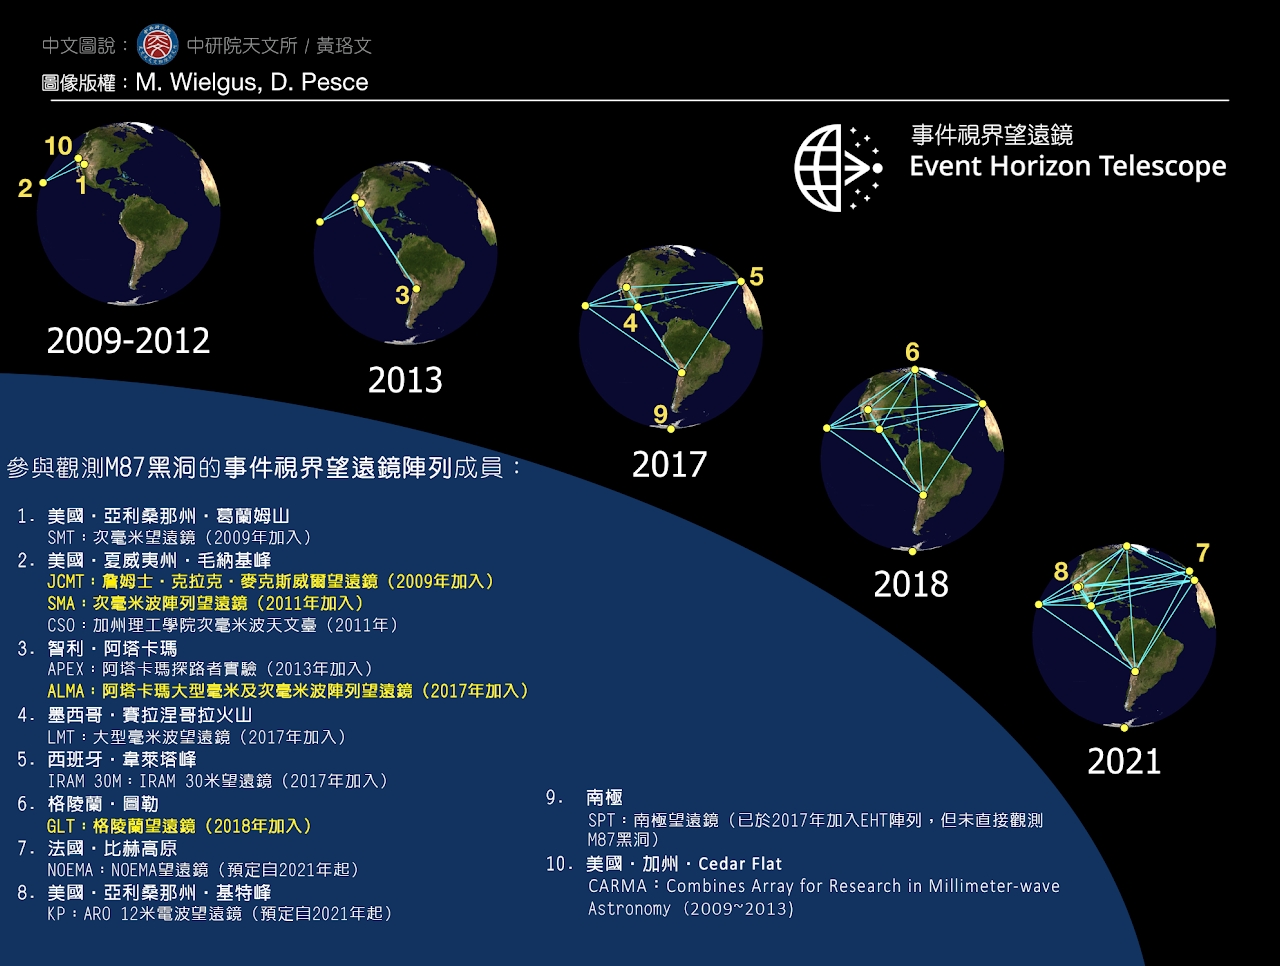 从 2009 年之后，事件视界望远镜的天线成员数量陆续增加，台湾目前总共贡献了 4 座望远镜的营运与仪器技术。资料来源│中研院天文所